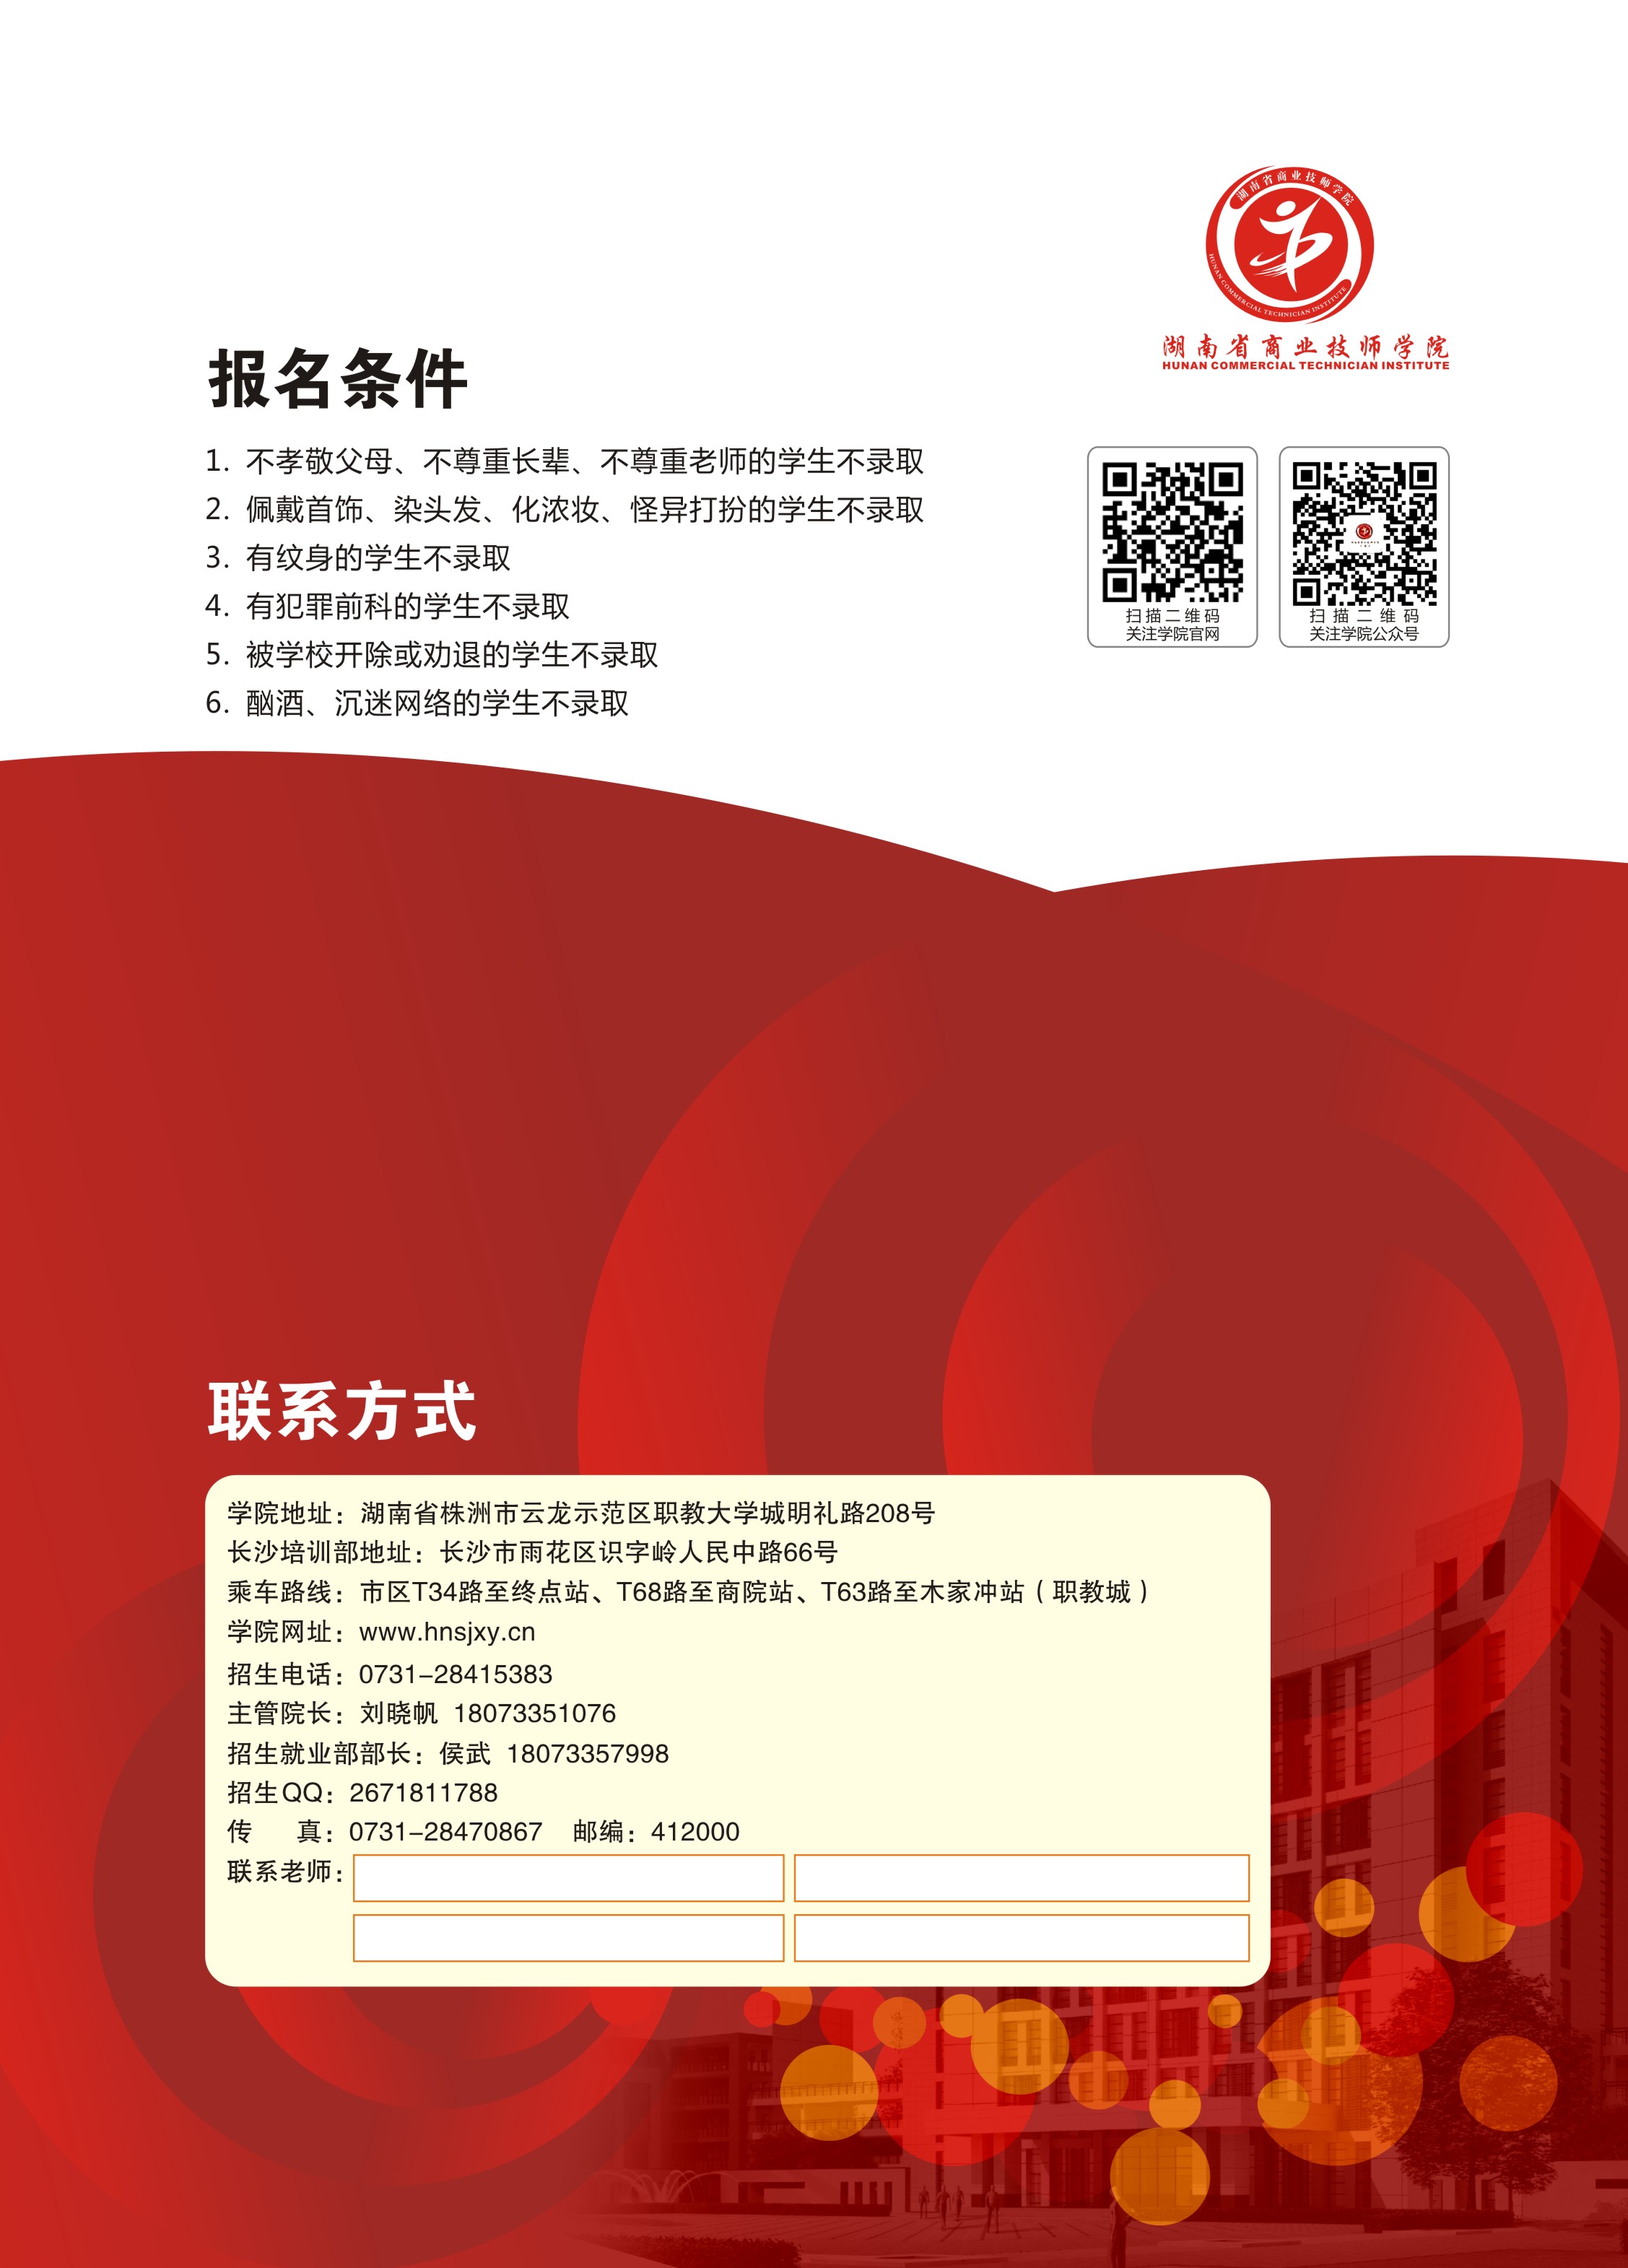 湖南省商业技师学院2020年招生简章